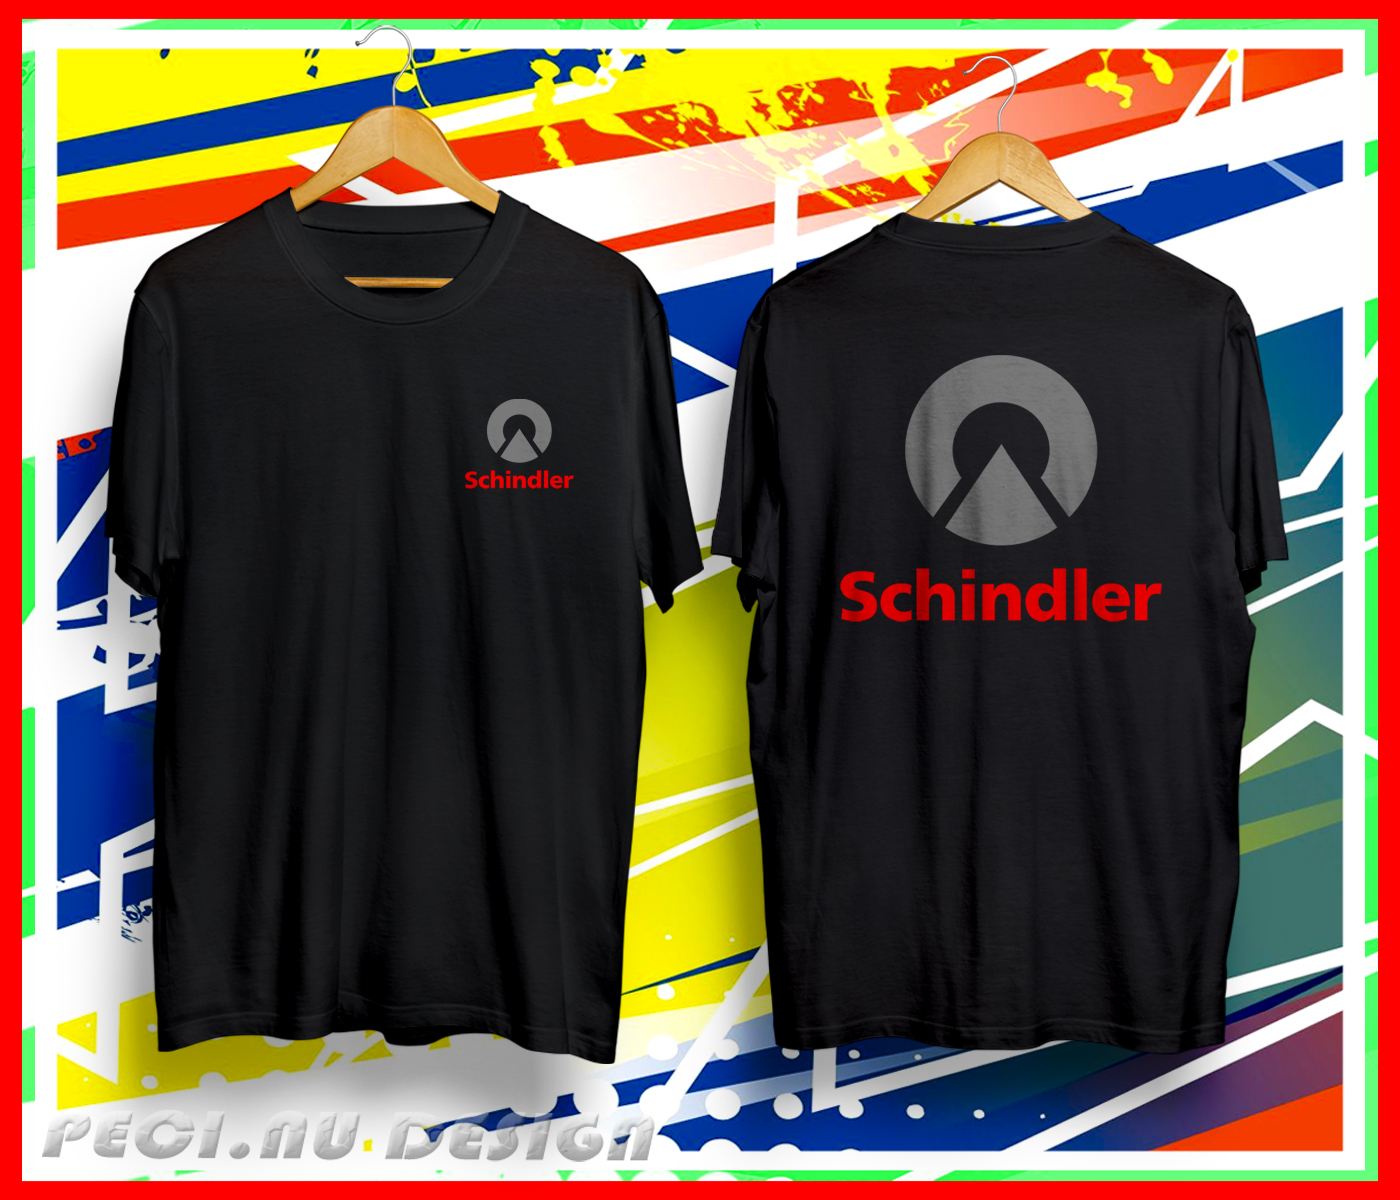 Schindler elevators escalators company t-shirt Usa Size S-5XL